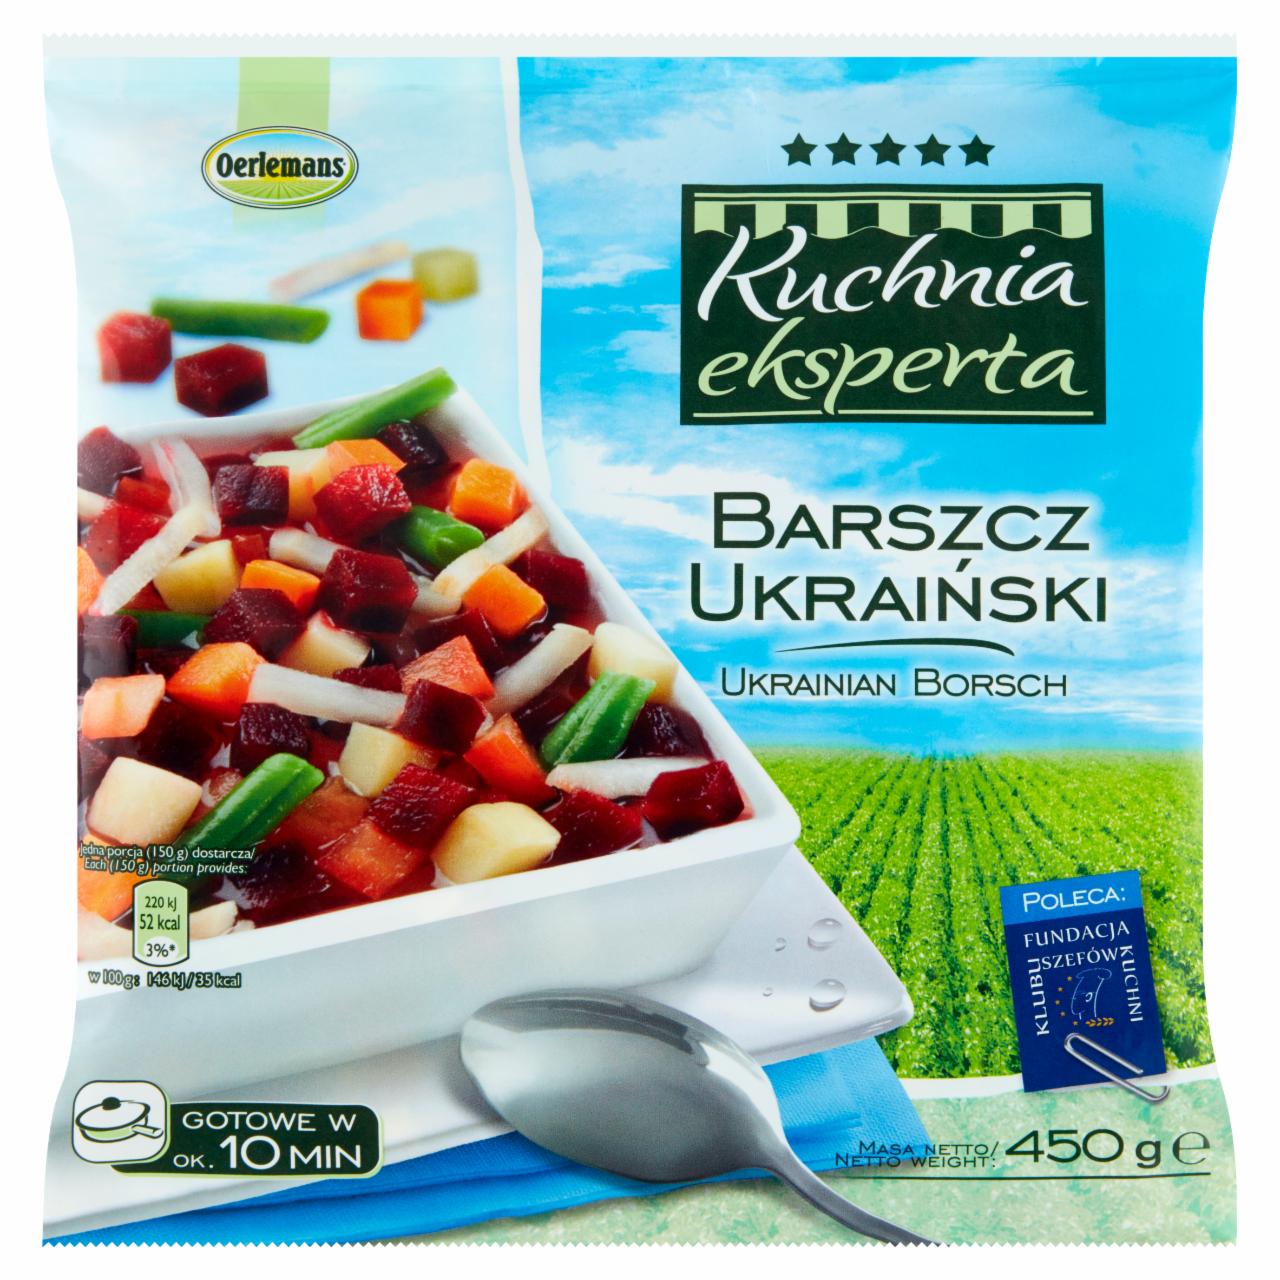 Zdjęcia - Oerlemans Kuchnia eksperta Barszcz ukraiński 450 g